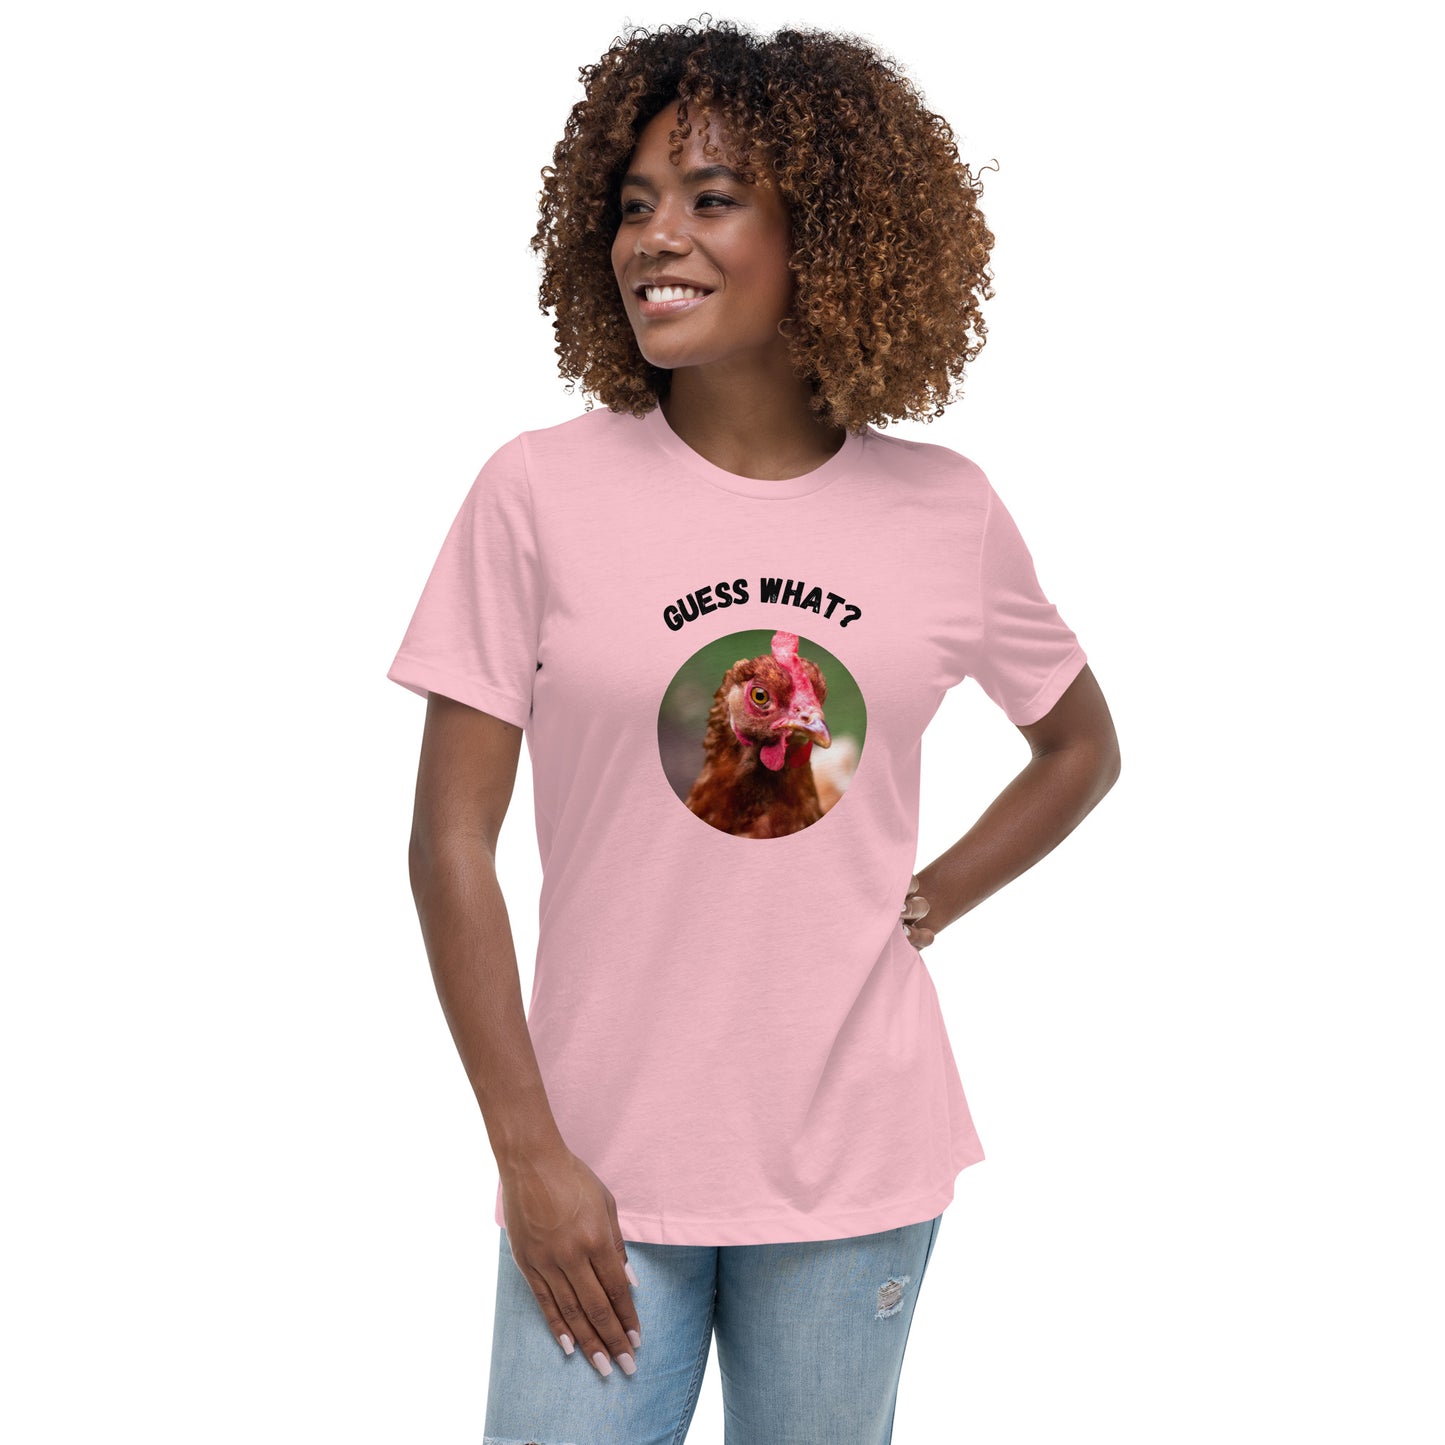 Guess What Chicken Butt - Women's Relaxed T-Shirt